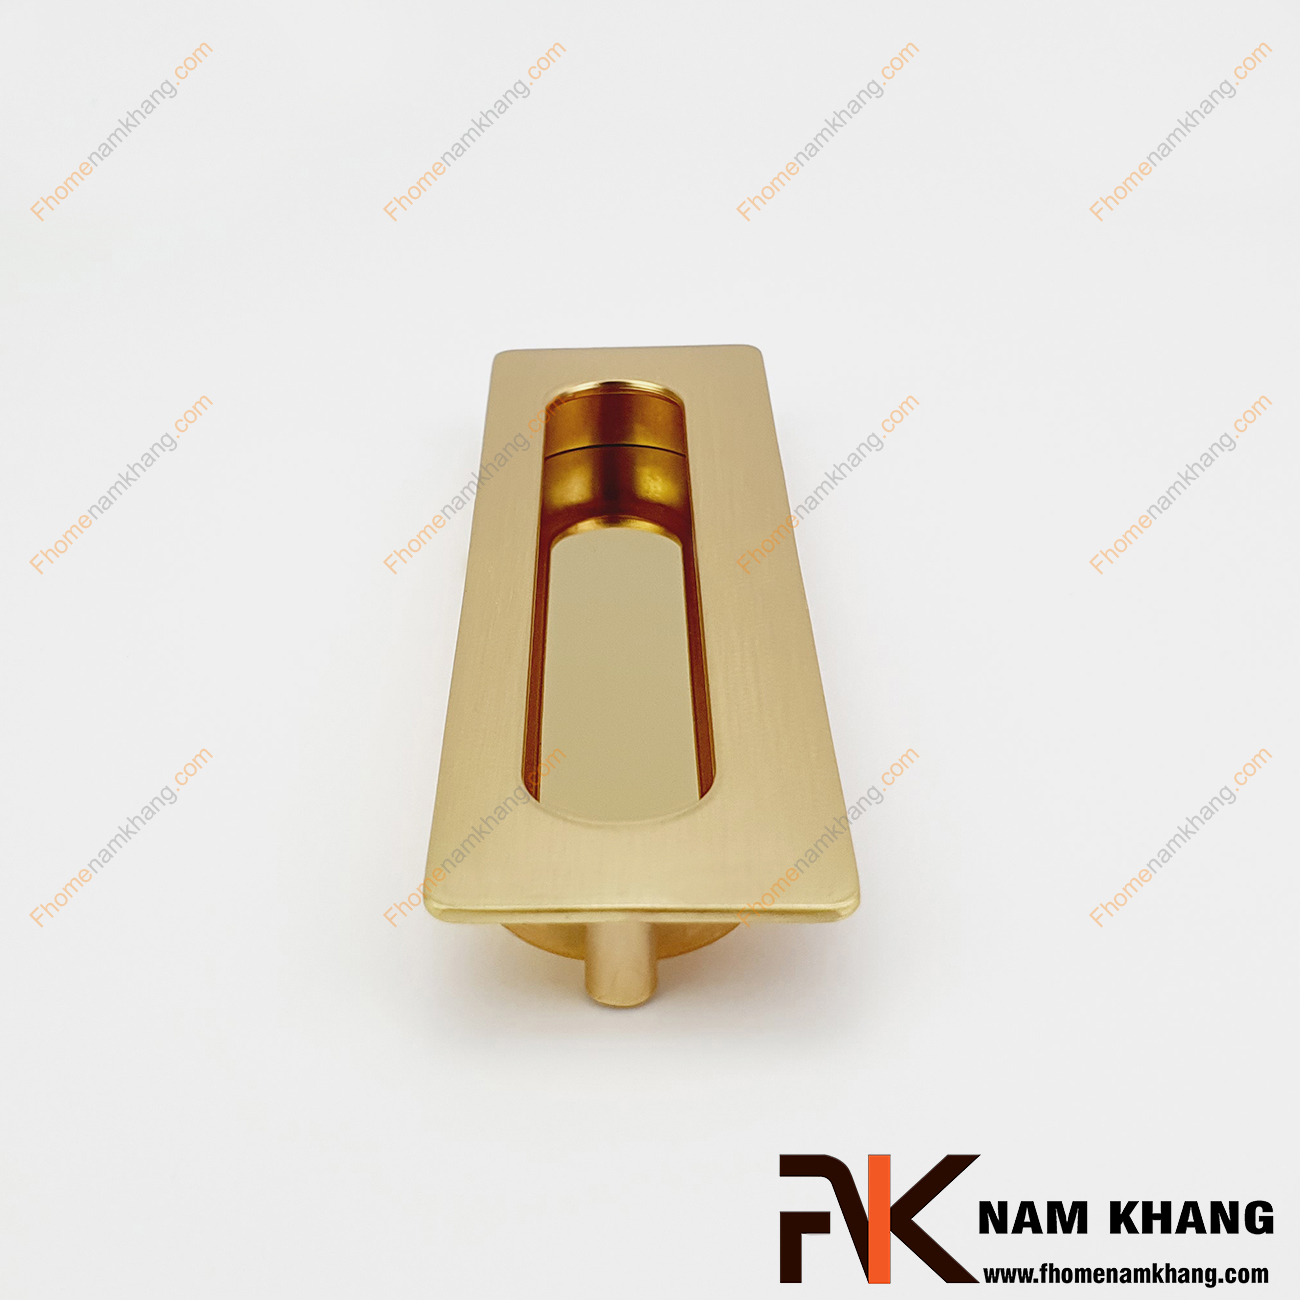 Tay nắm âm tủ màu vàng mờ NK356-VM là loại tay nắm chuyên dùng cho các loại tủ đặt ở những nơi có không gian hạn chế hoặc dùng để nâng cao tính thẫm mỹ của sản phẩm.